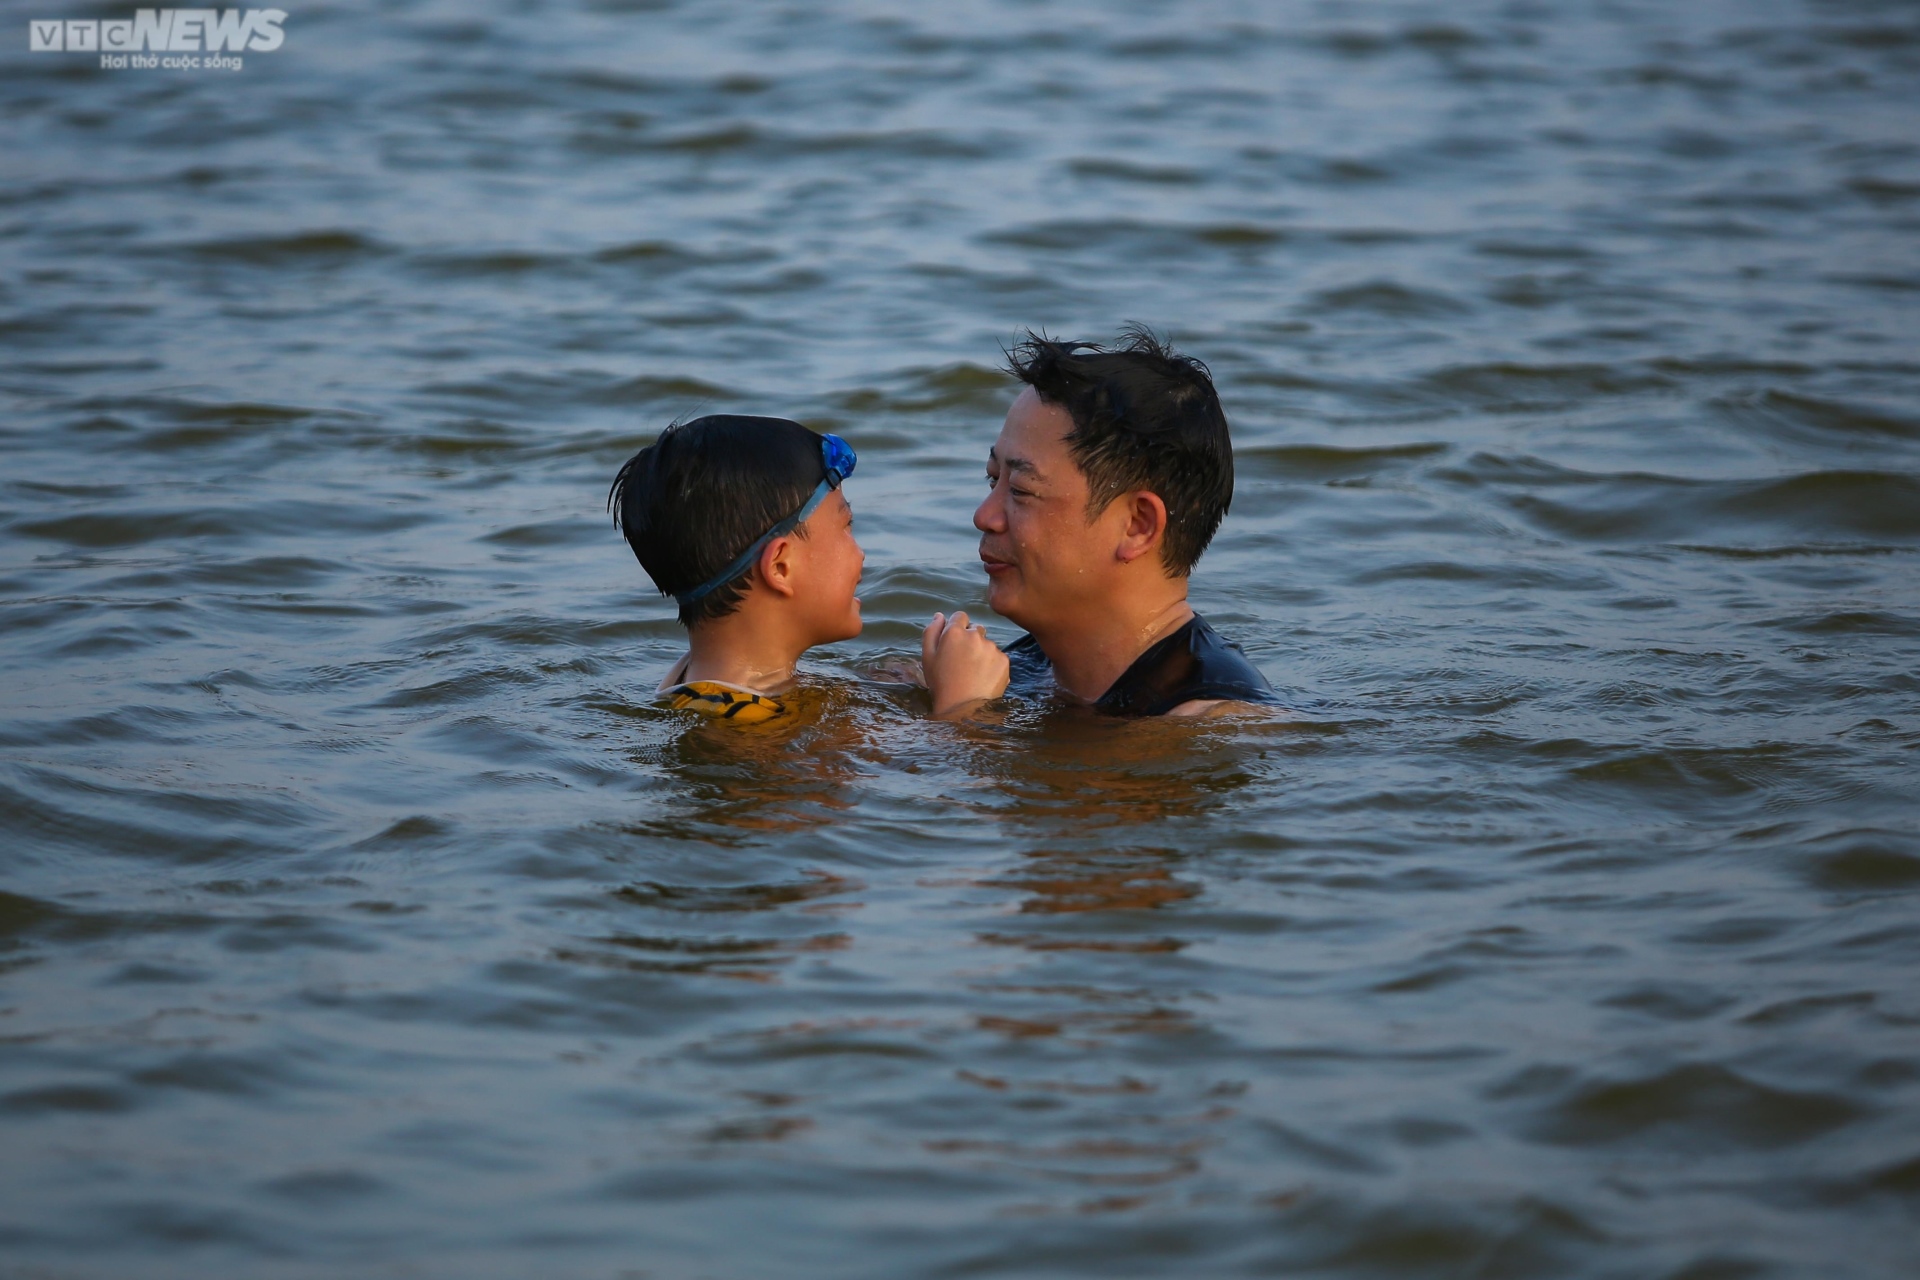 Chiều hè đổ lửa, người dân Hà Nội tìm sông hồ giải nhiệt - ảnh 11